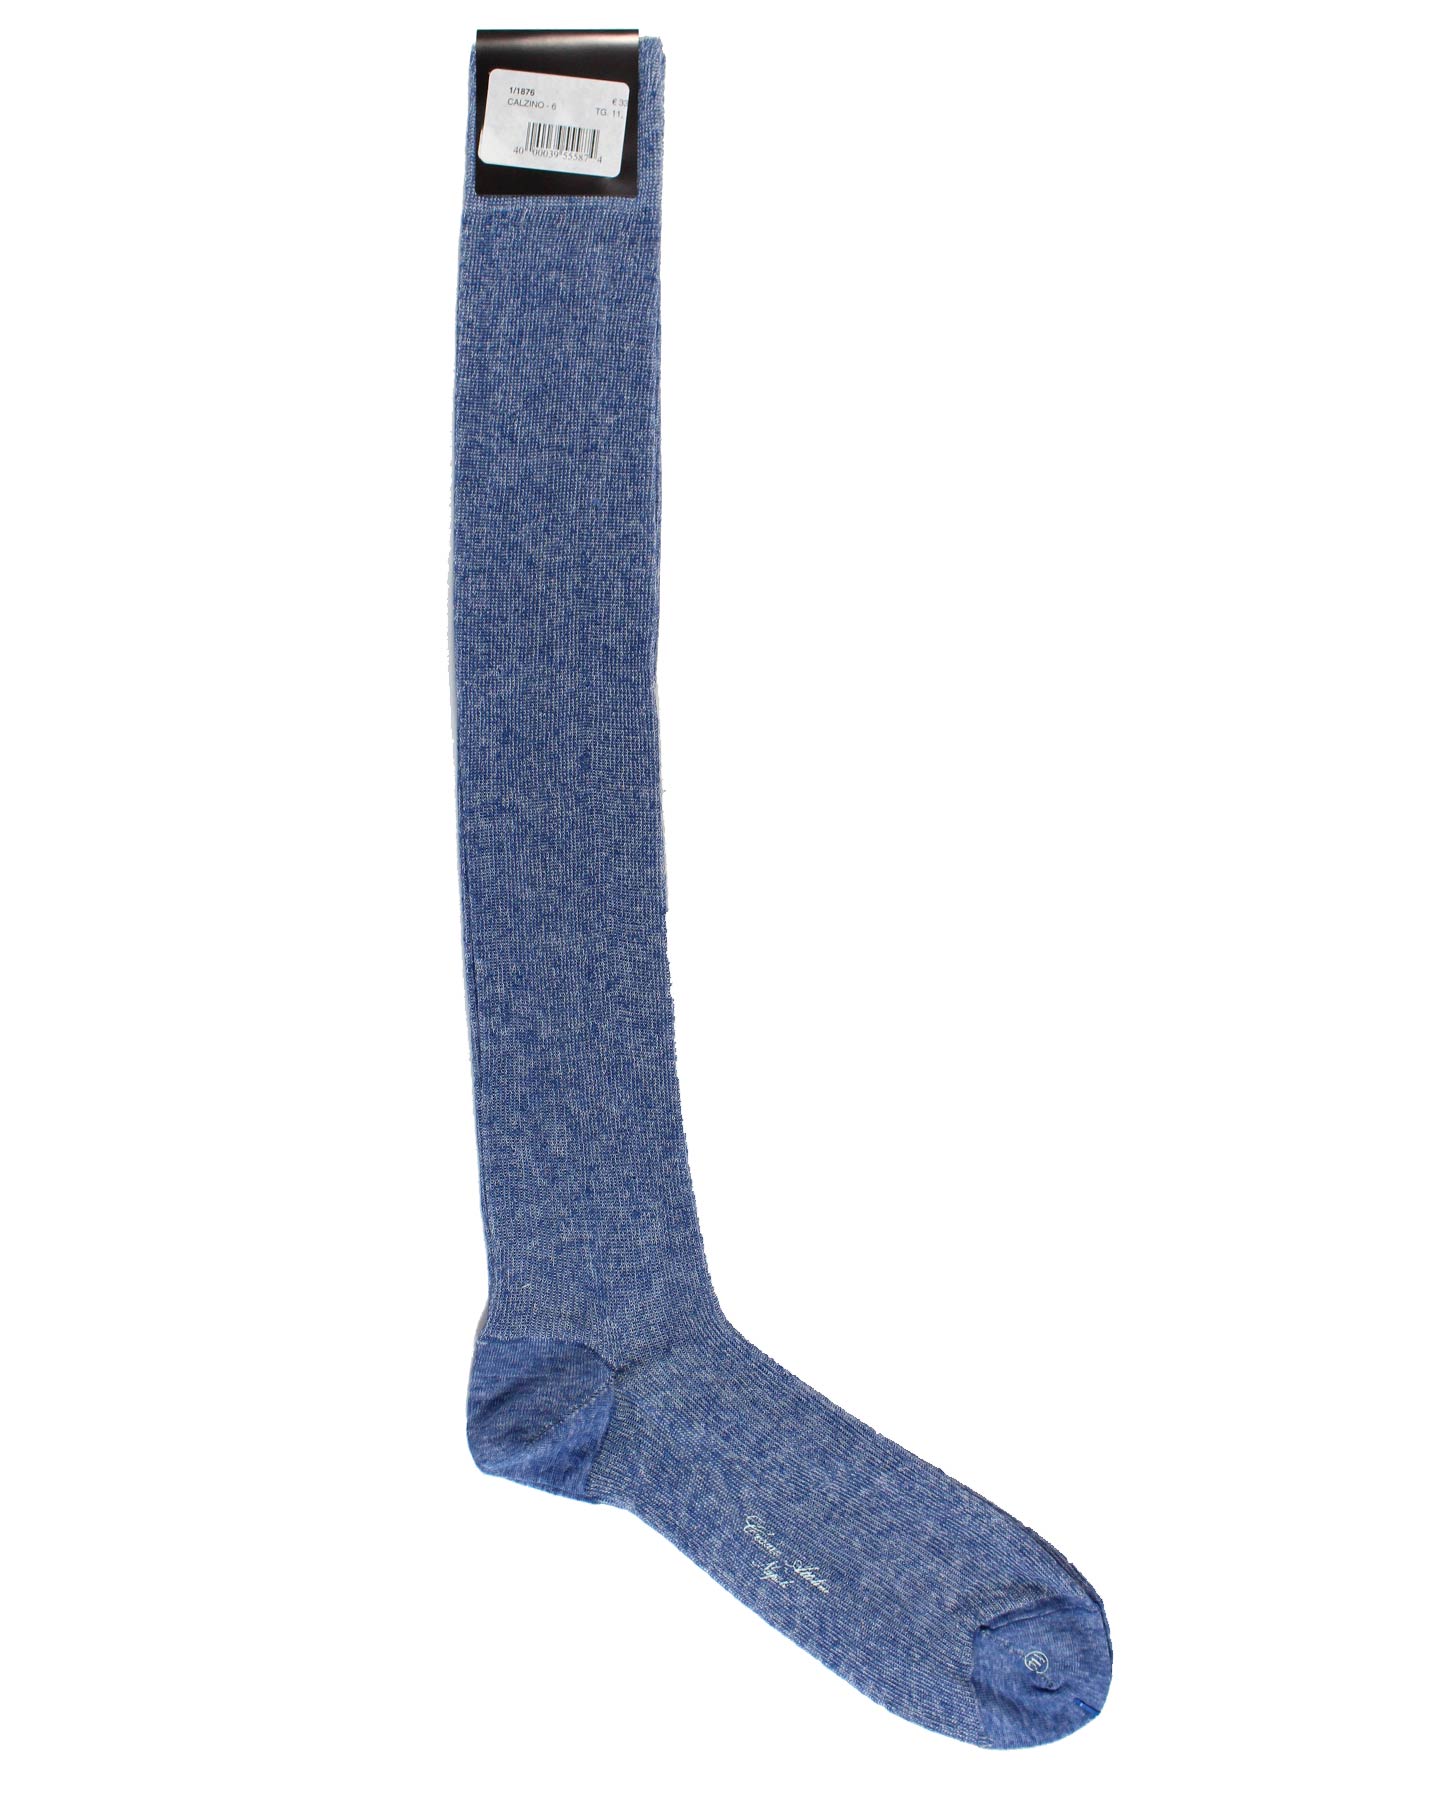 Cesare Attolini Blue Over The Calf Socks Linen Cotton 